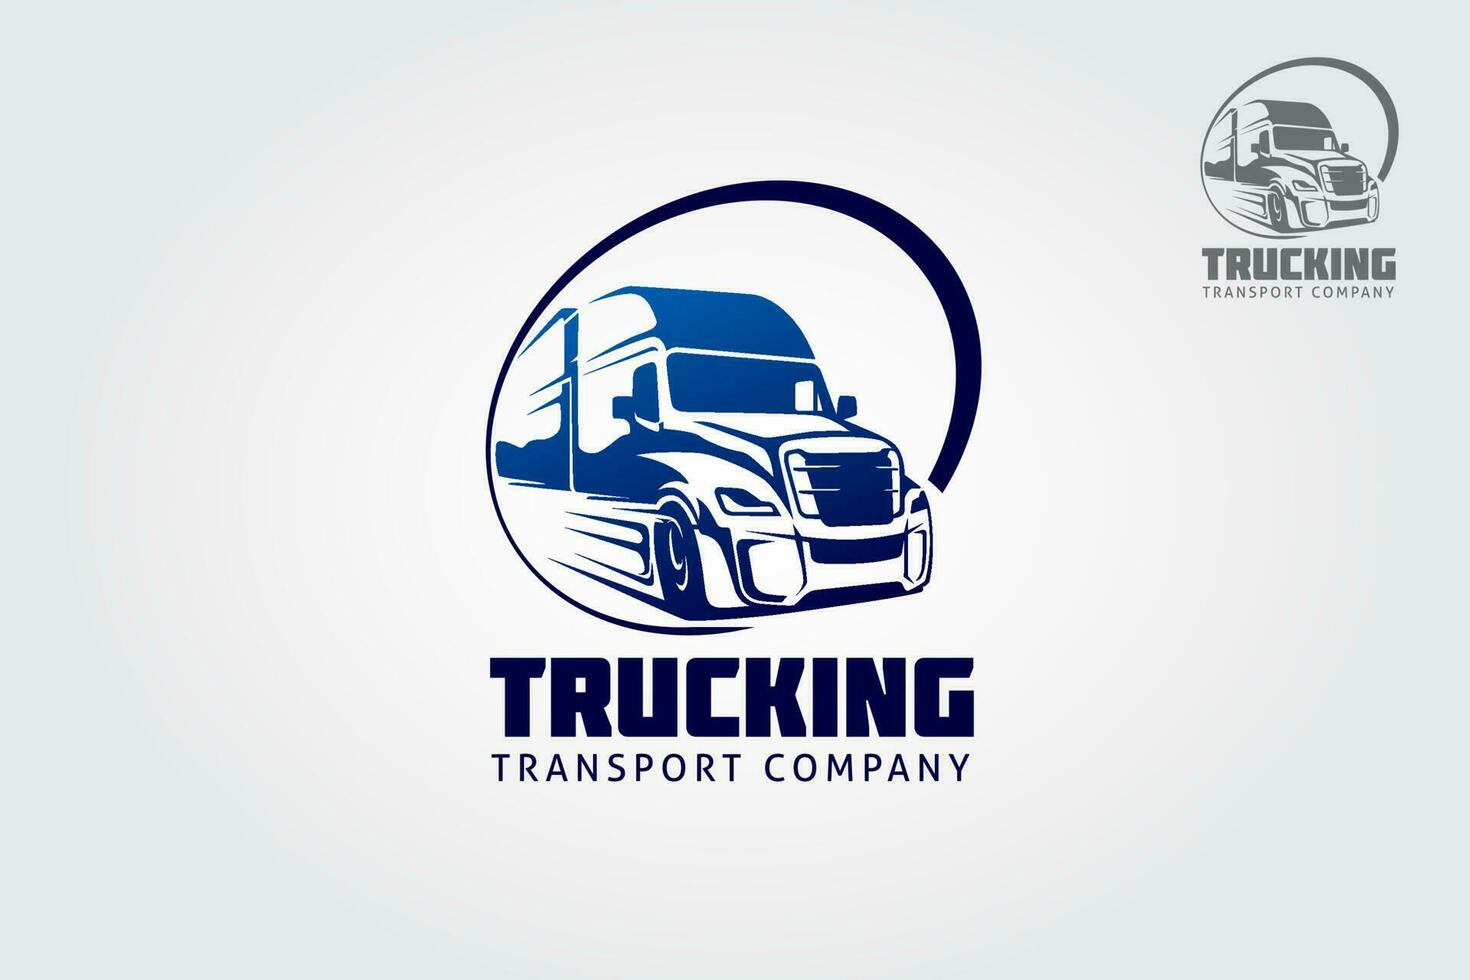 camionaje transporte vector logo modelo. esta logo entrega genial calidad y lujo logos para cada gusto y necesidades.